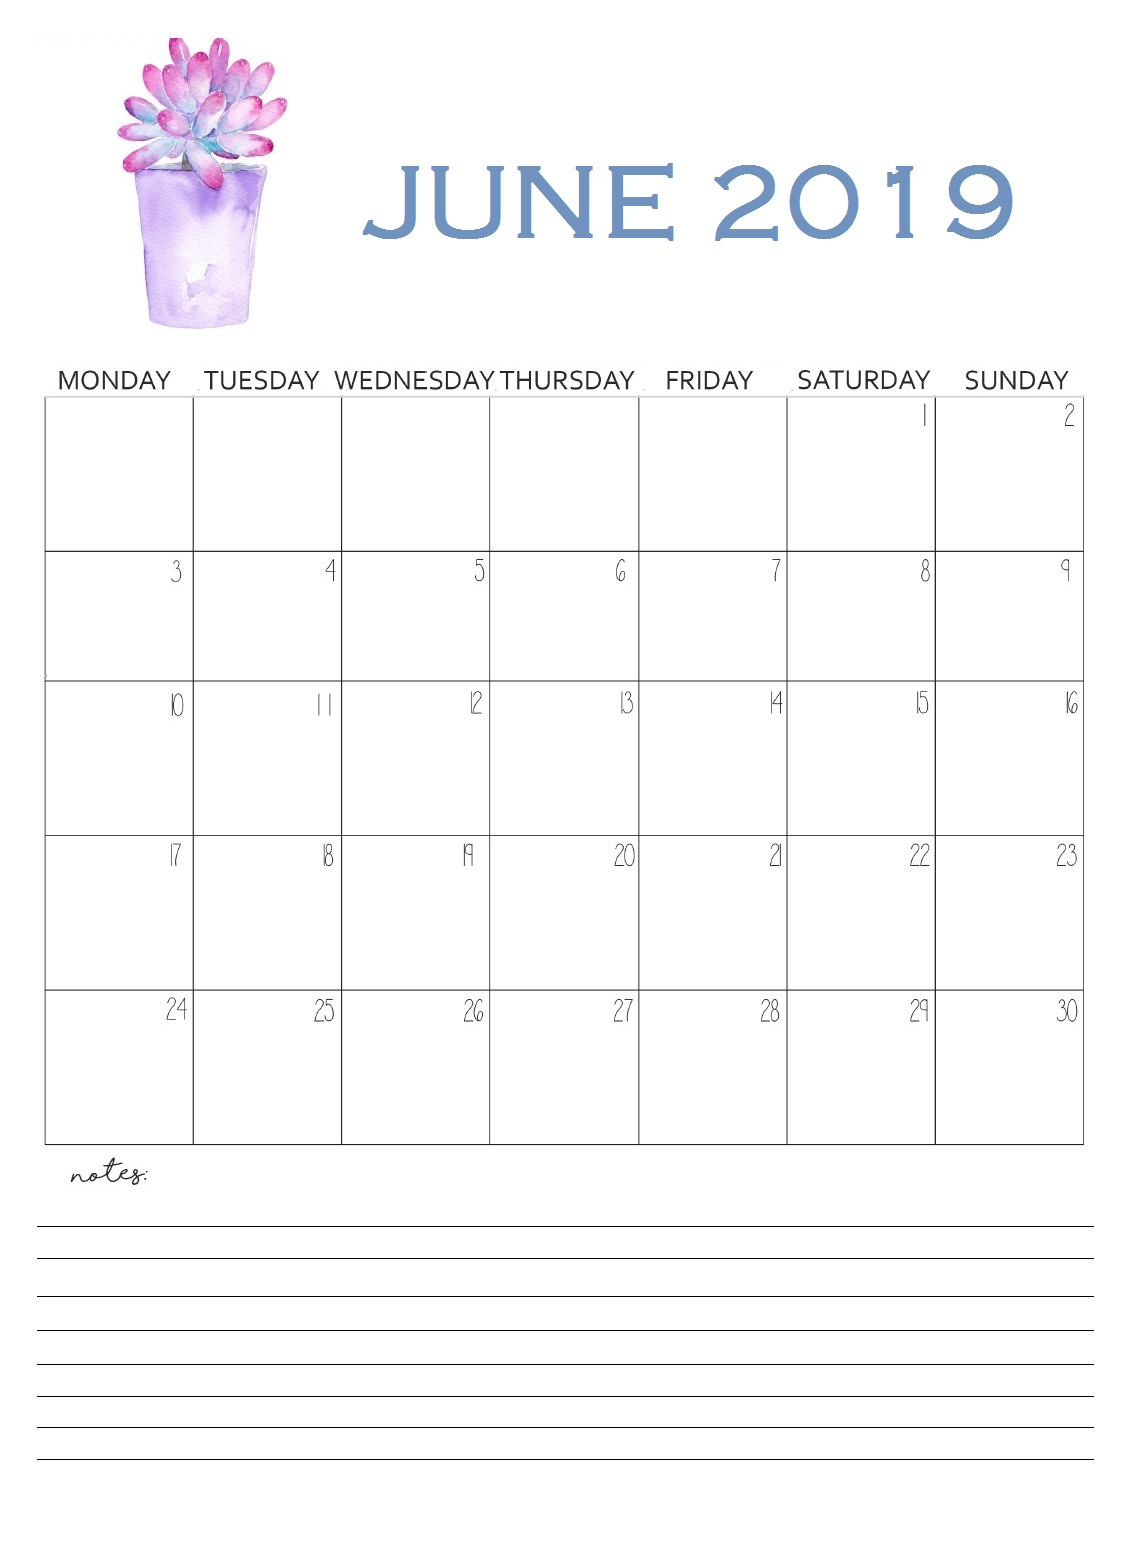 June 2019 Home Wall Calendar